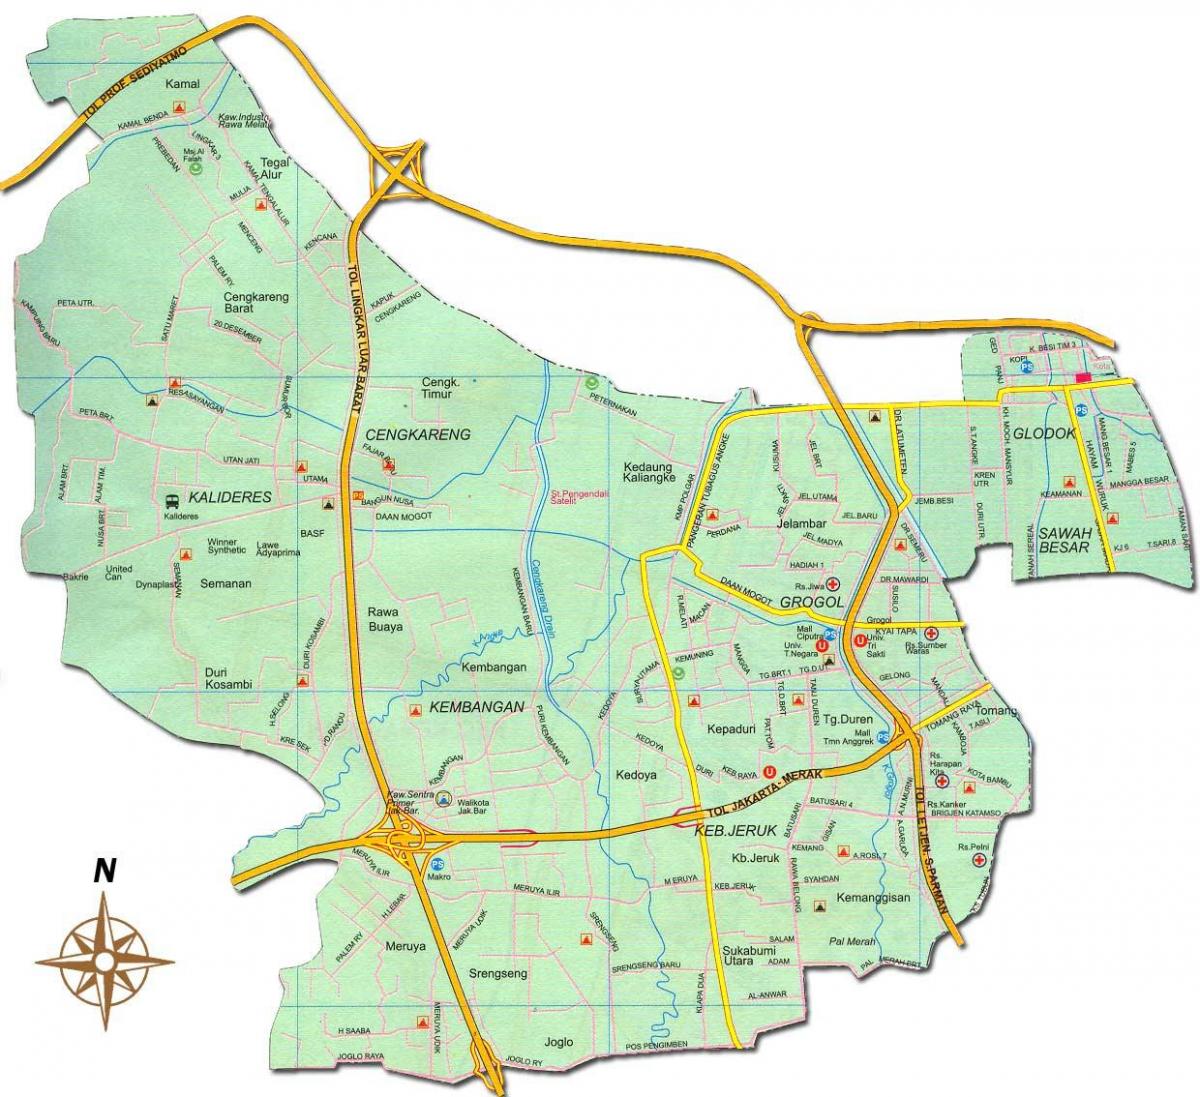 zemljevid monas